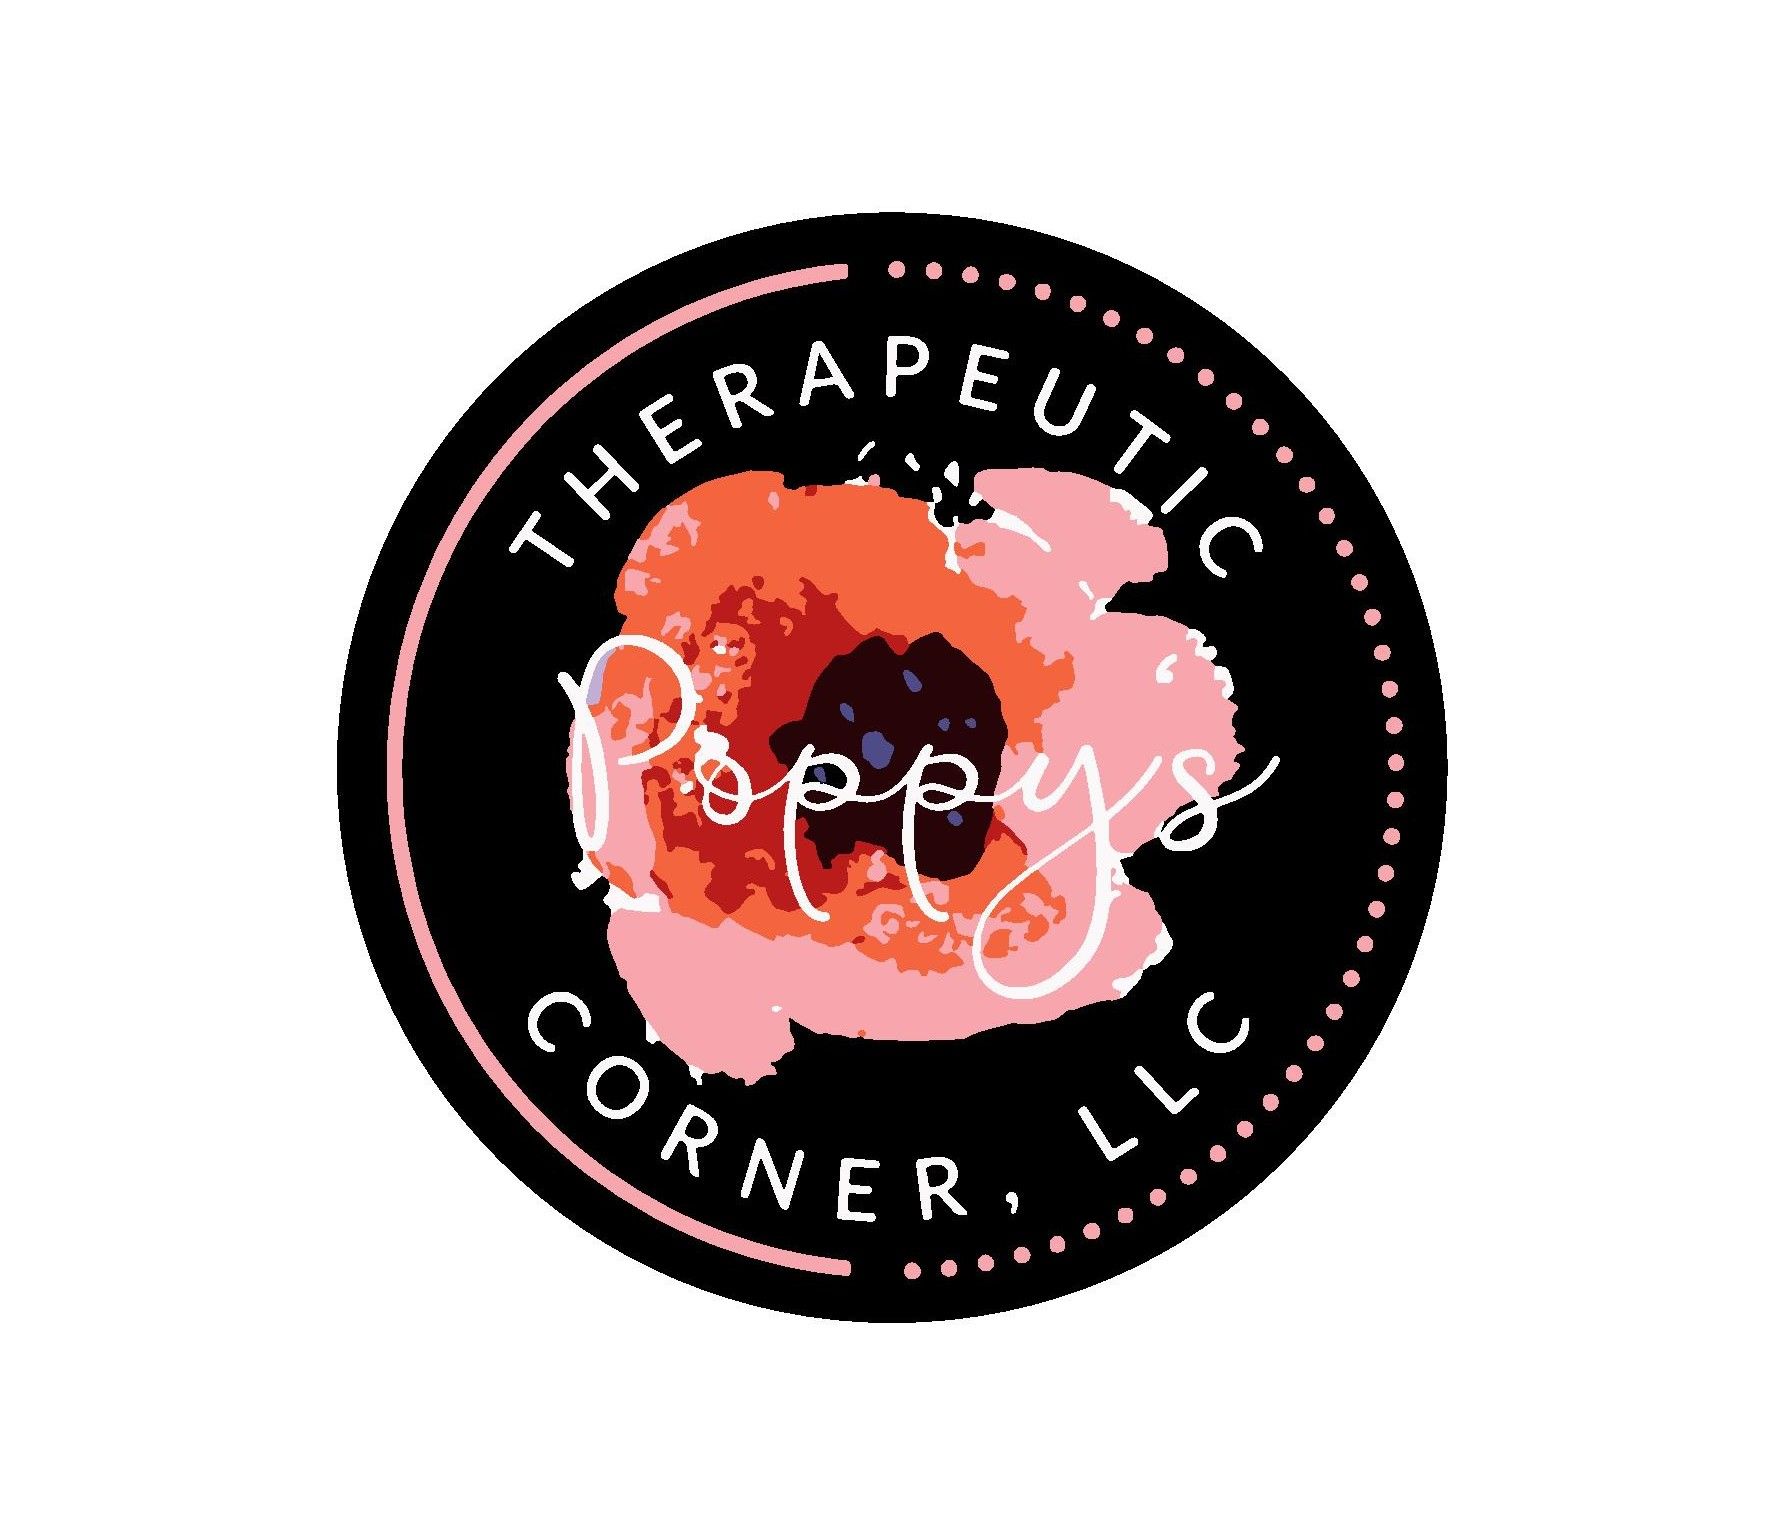 A Safe Corner - Poppy’s Therapeutic Corner